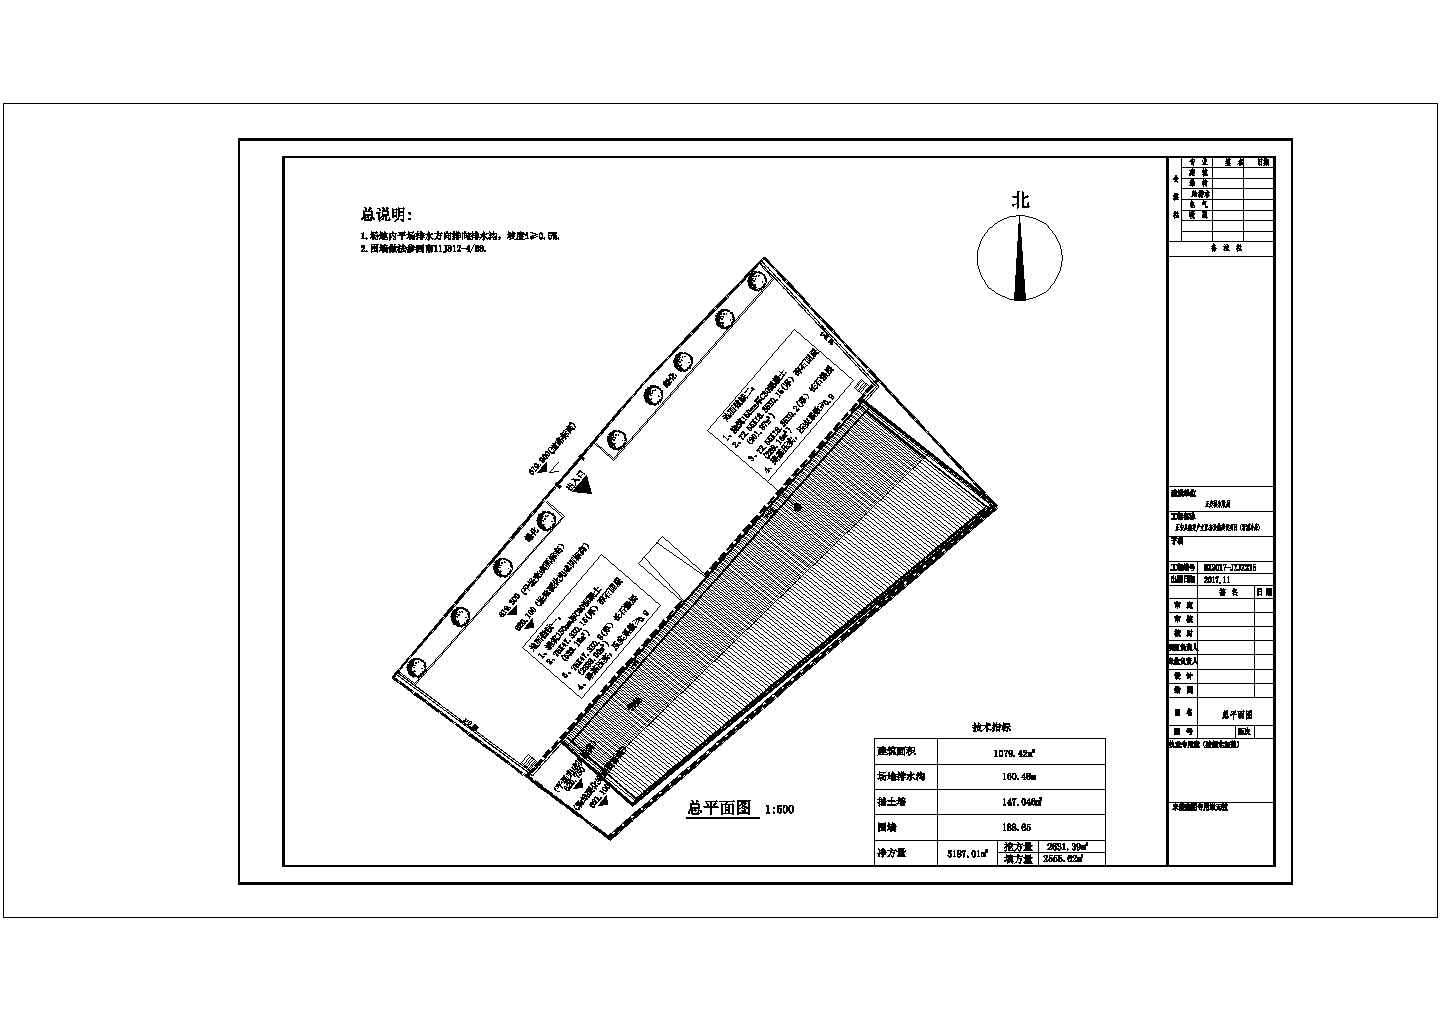 华西地区 蔬菜产业配套设施建设项目冷库总图